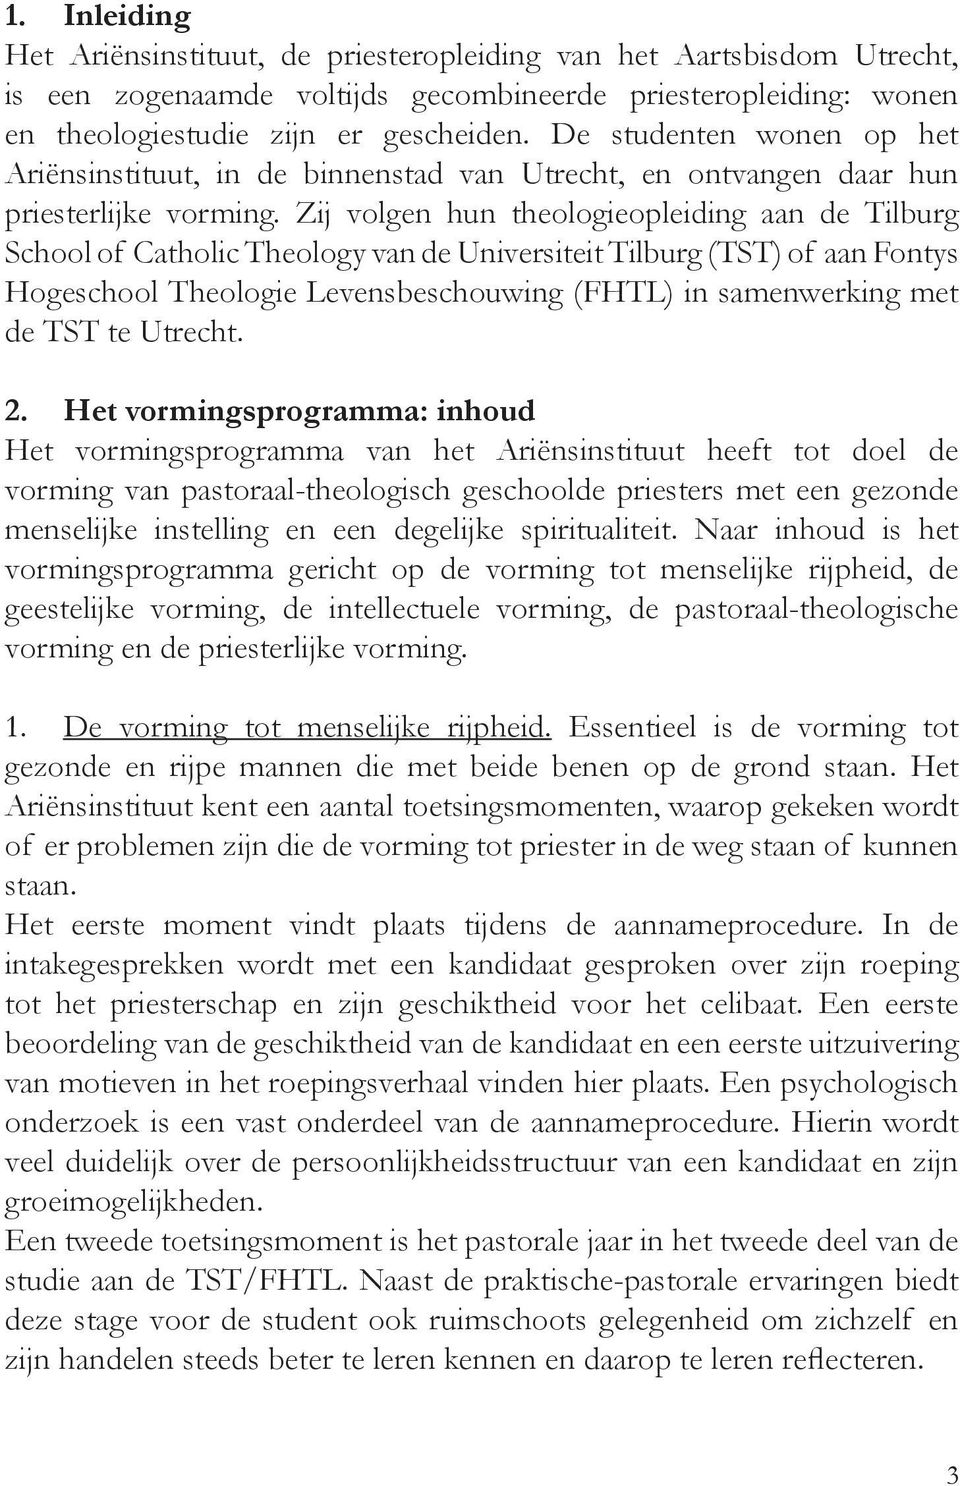 Zij volgen hun theologieopleiding aan de Tilburg School of Catholic Theology van de Universiteit Tilburg (TST) of aan Fontys Hogeschool Theologie Levensbeschouwing (FHTL) in samenwerking met de TST